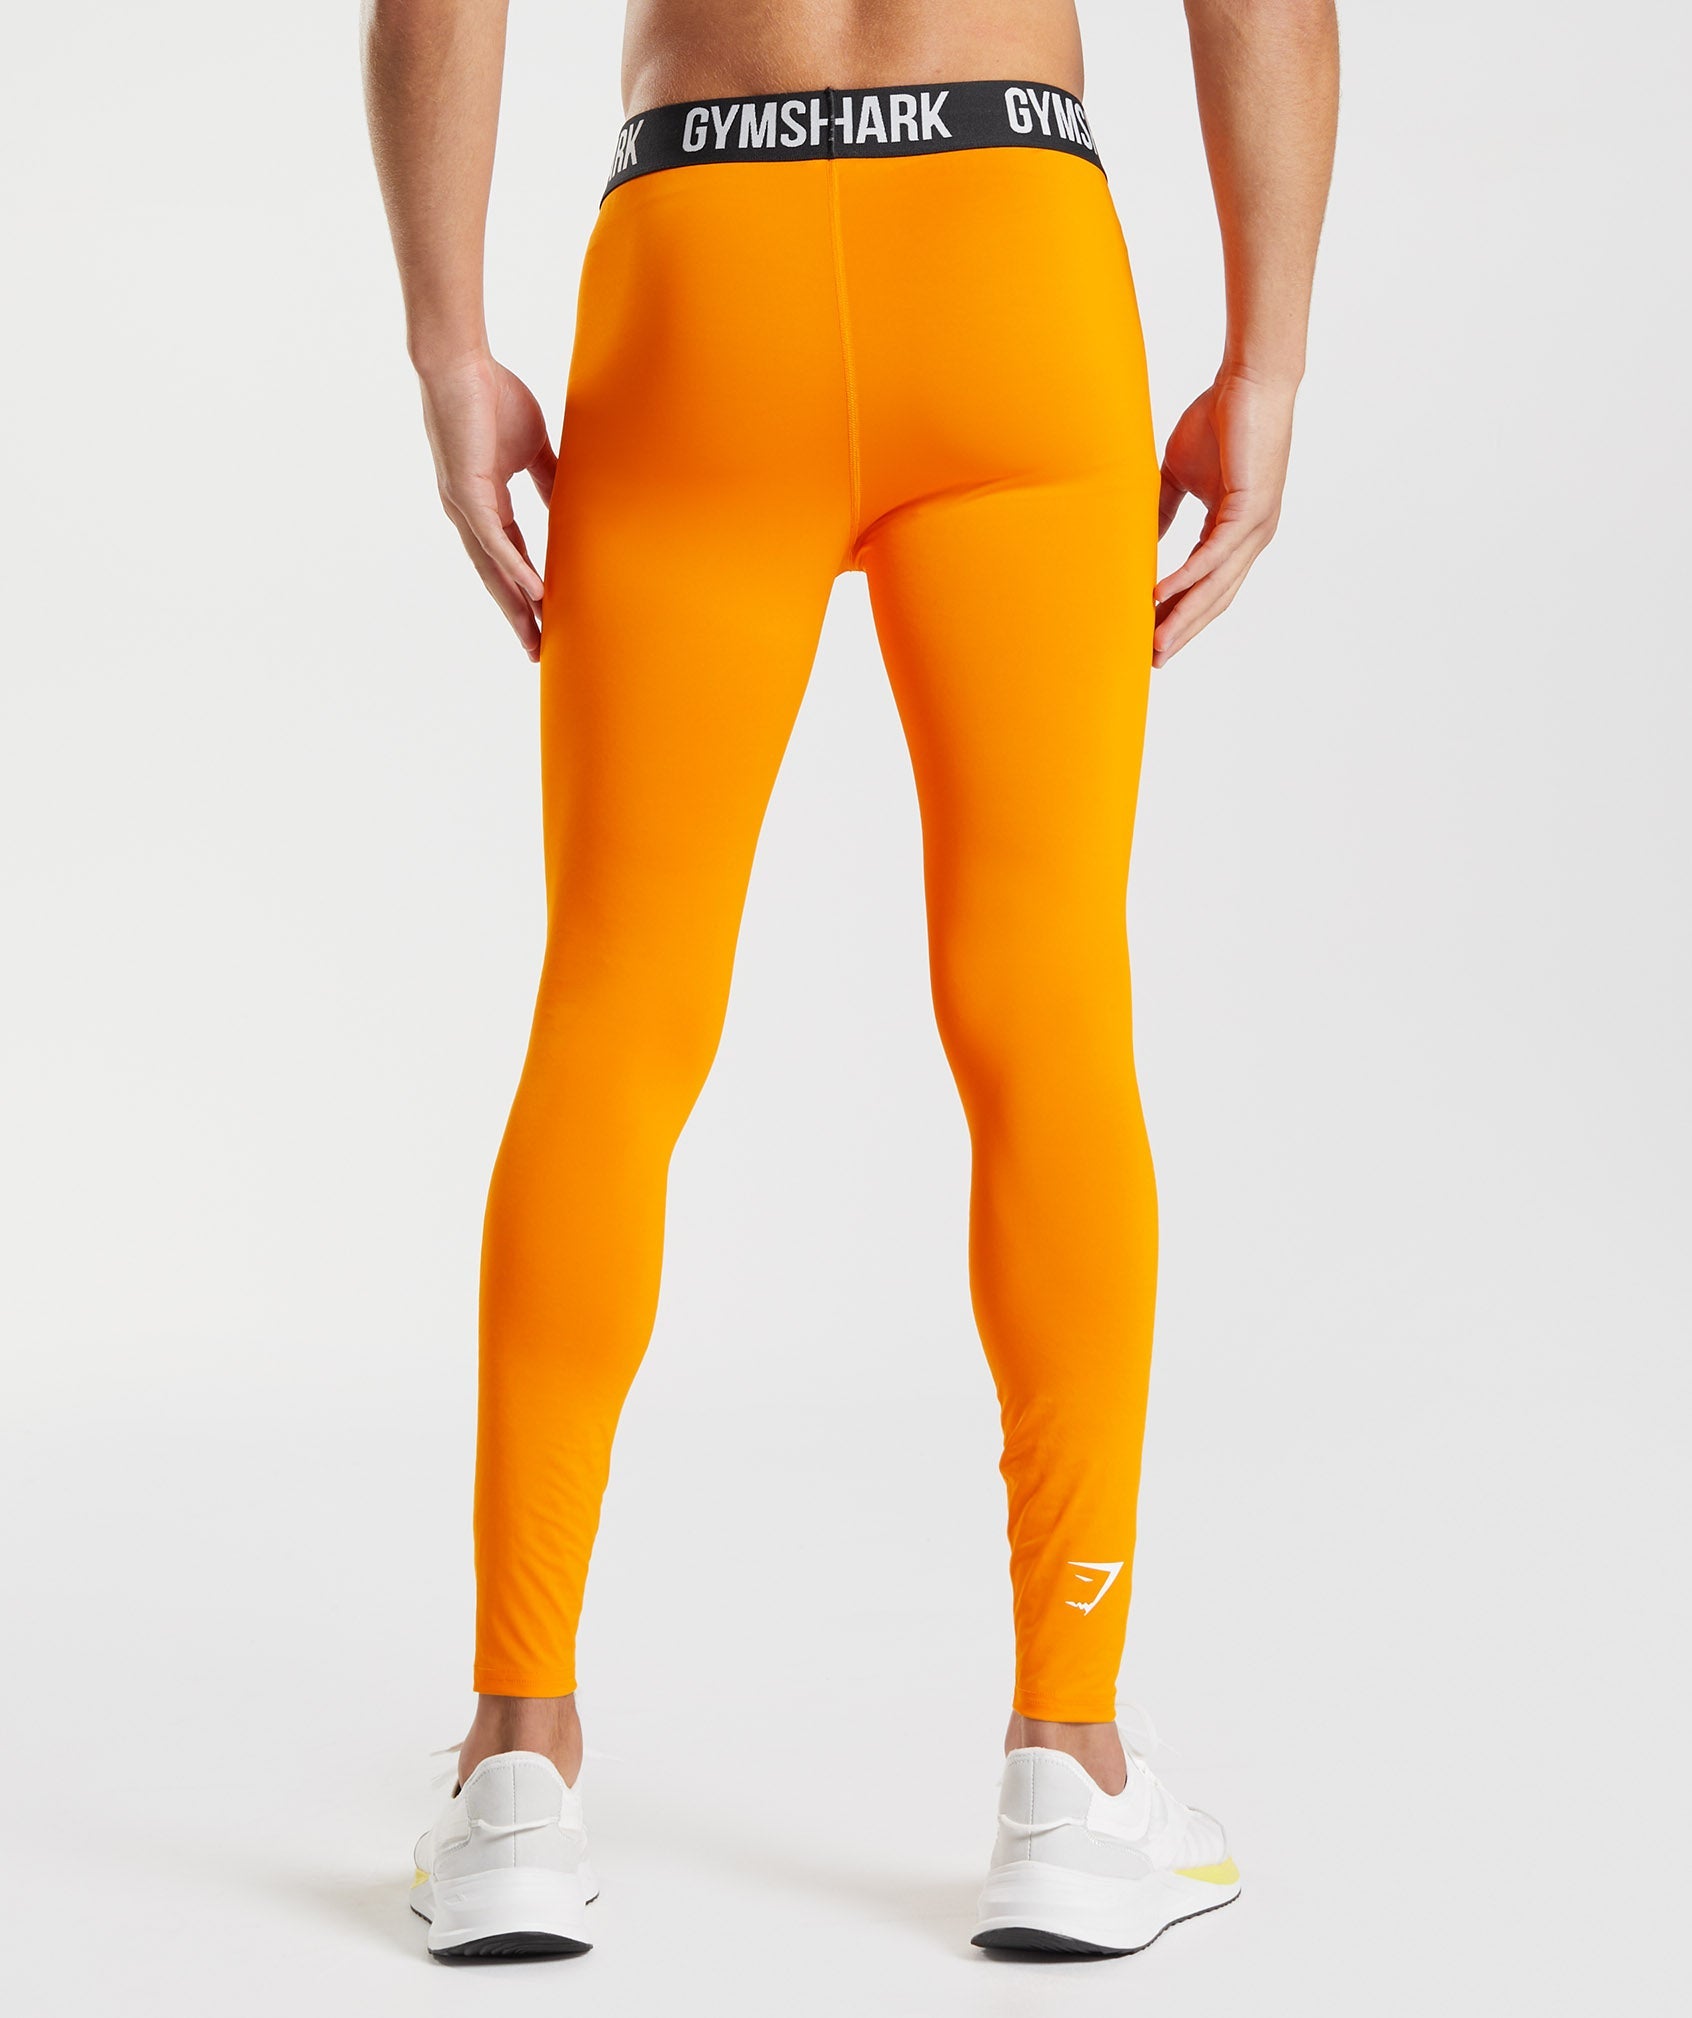 Men Running Tights Orange Gym Leggings Man Compression Pants Low